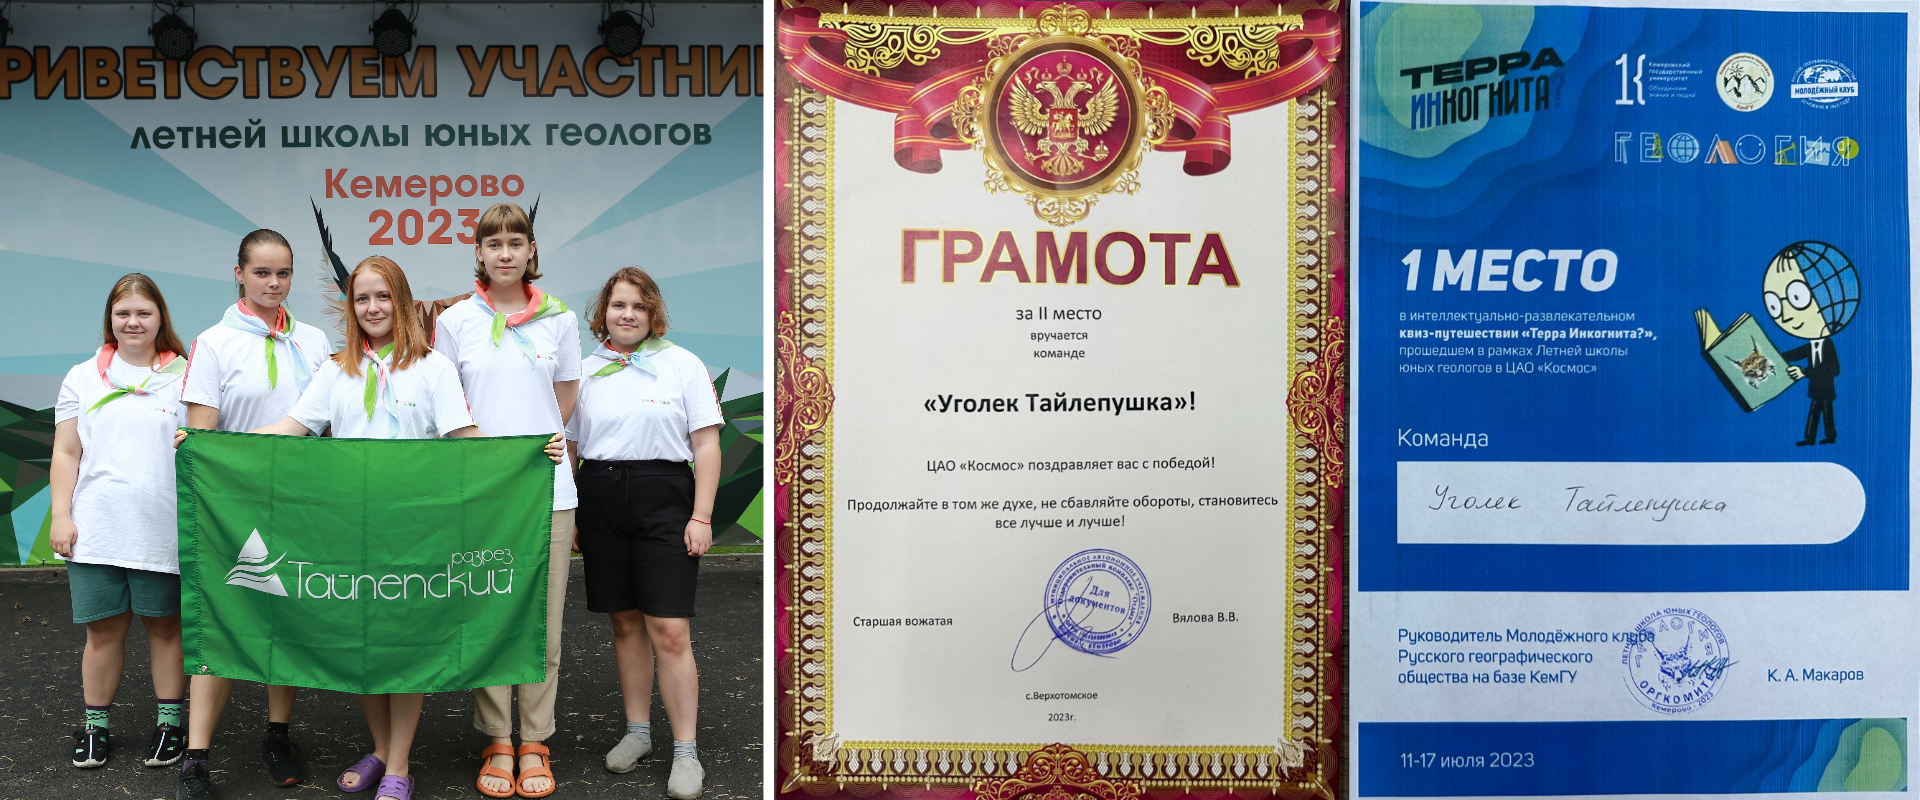 Команда "Уголек Тайлепушка" приняла участие в Летней школе юных геологов в Кузбассе